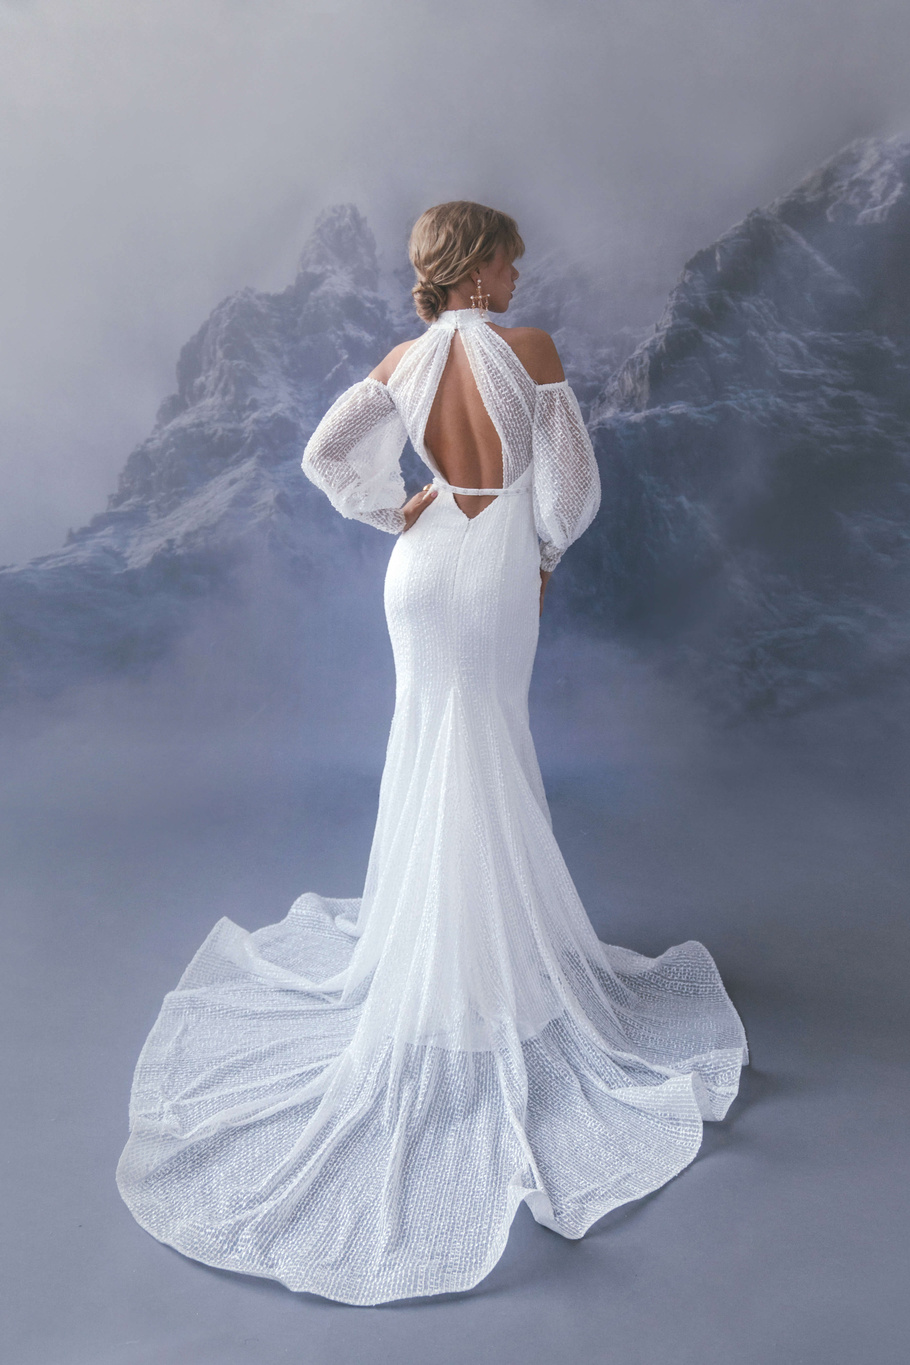 Купить свадебное платье «Вева» Бламмо Биамо из коллекции Сказка 2022 года в салоне «Мэри Трюфель»